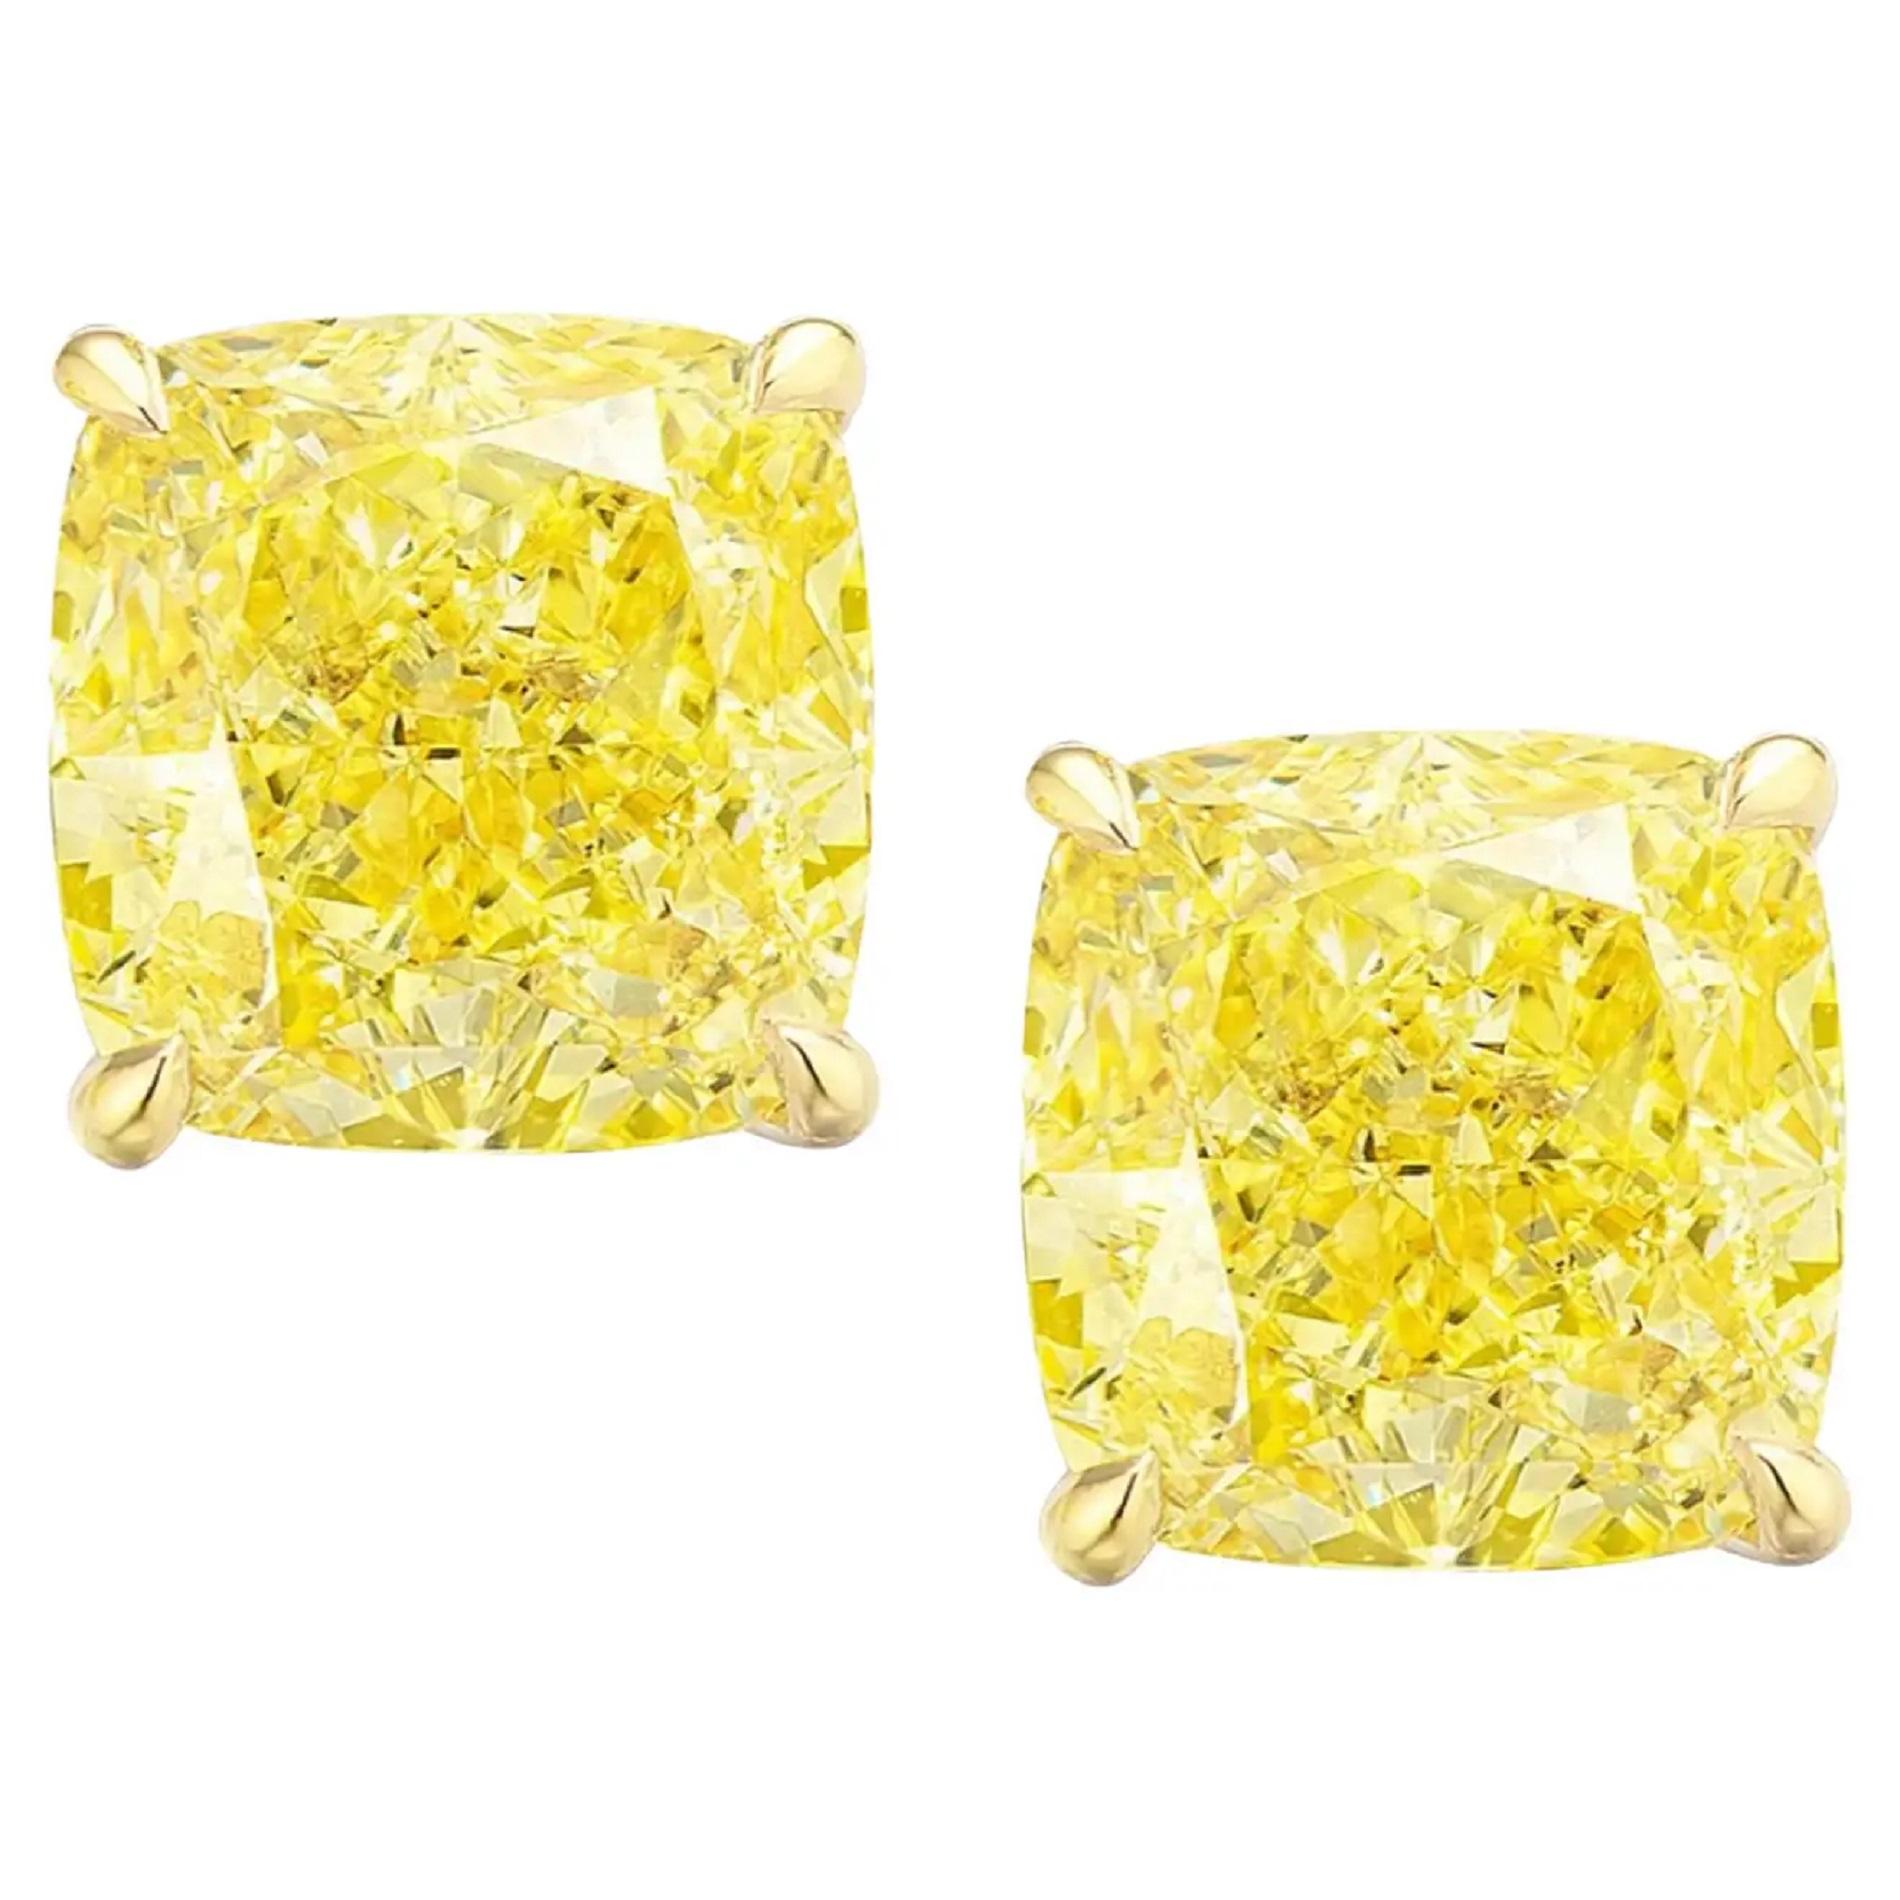 Erhöhen Sie Ihre Eleganz mit diesen atemberaubenden Ohrsteckern, die jeweils mit einem Paar Diamanten im Kissenschliff mit einem Gewicht von beeindruckenden 3 Karat besetzt sind. Die Diamanten mit der auffälligen Farbe Fancy Intense Yellow strahlen